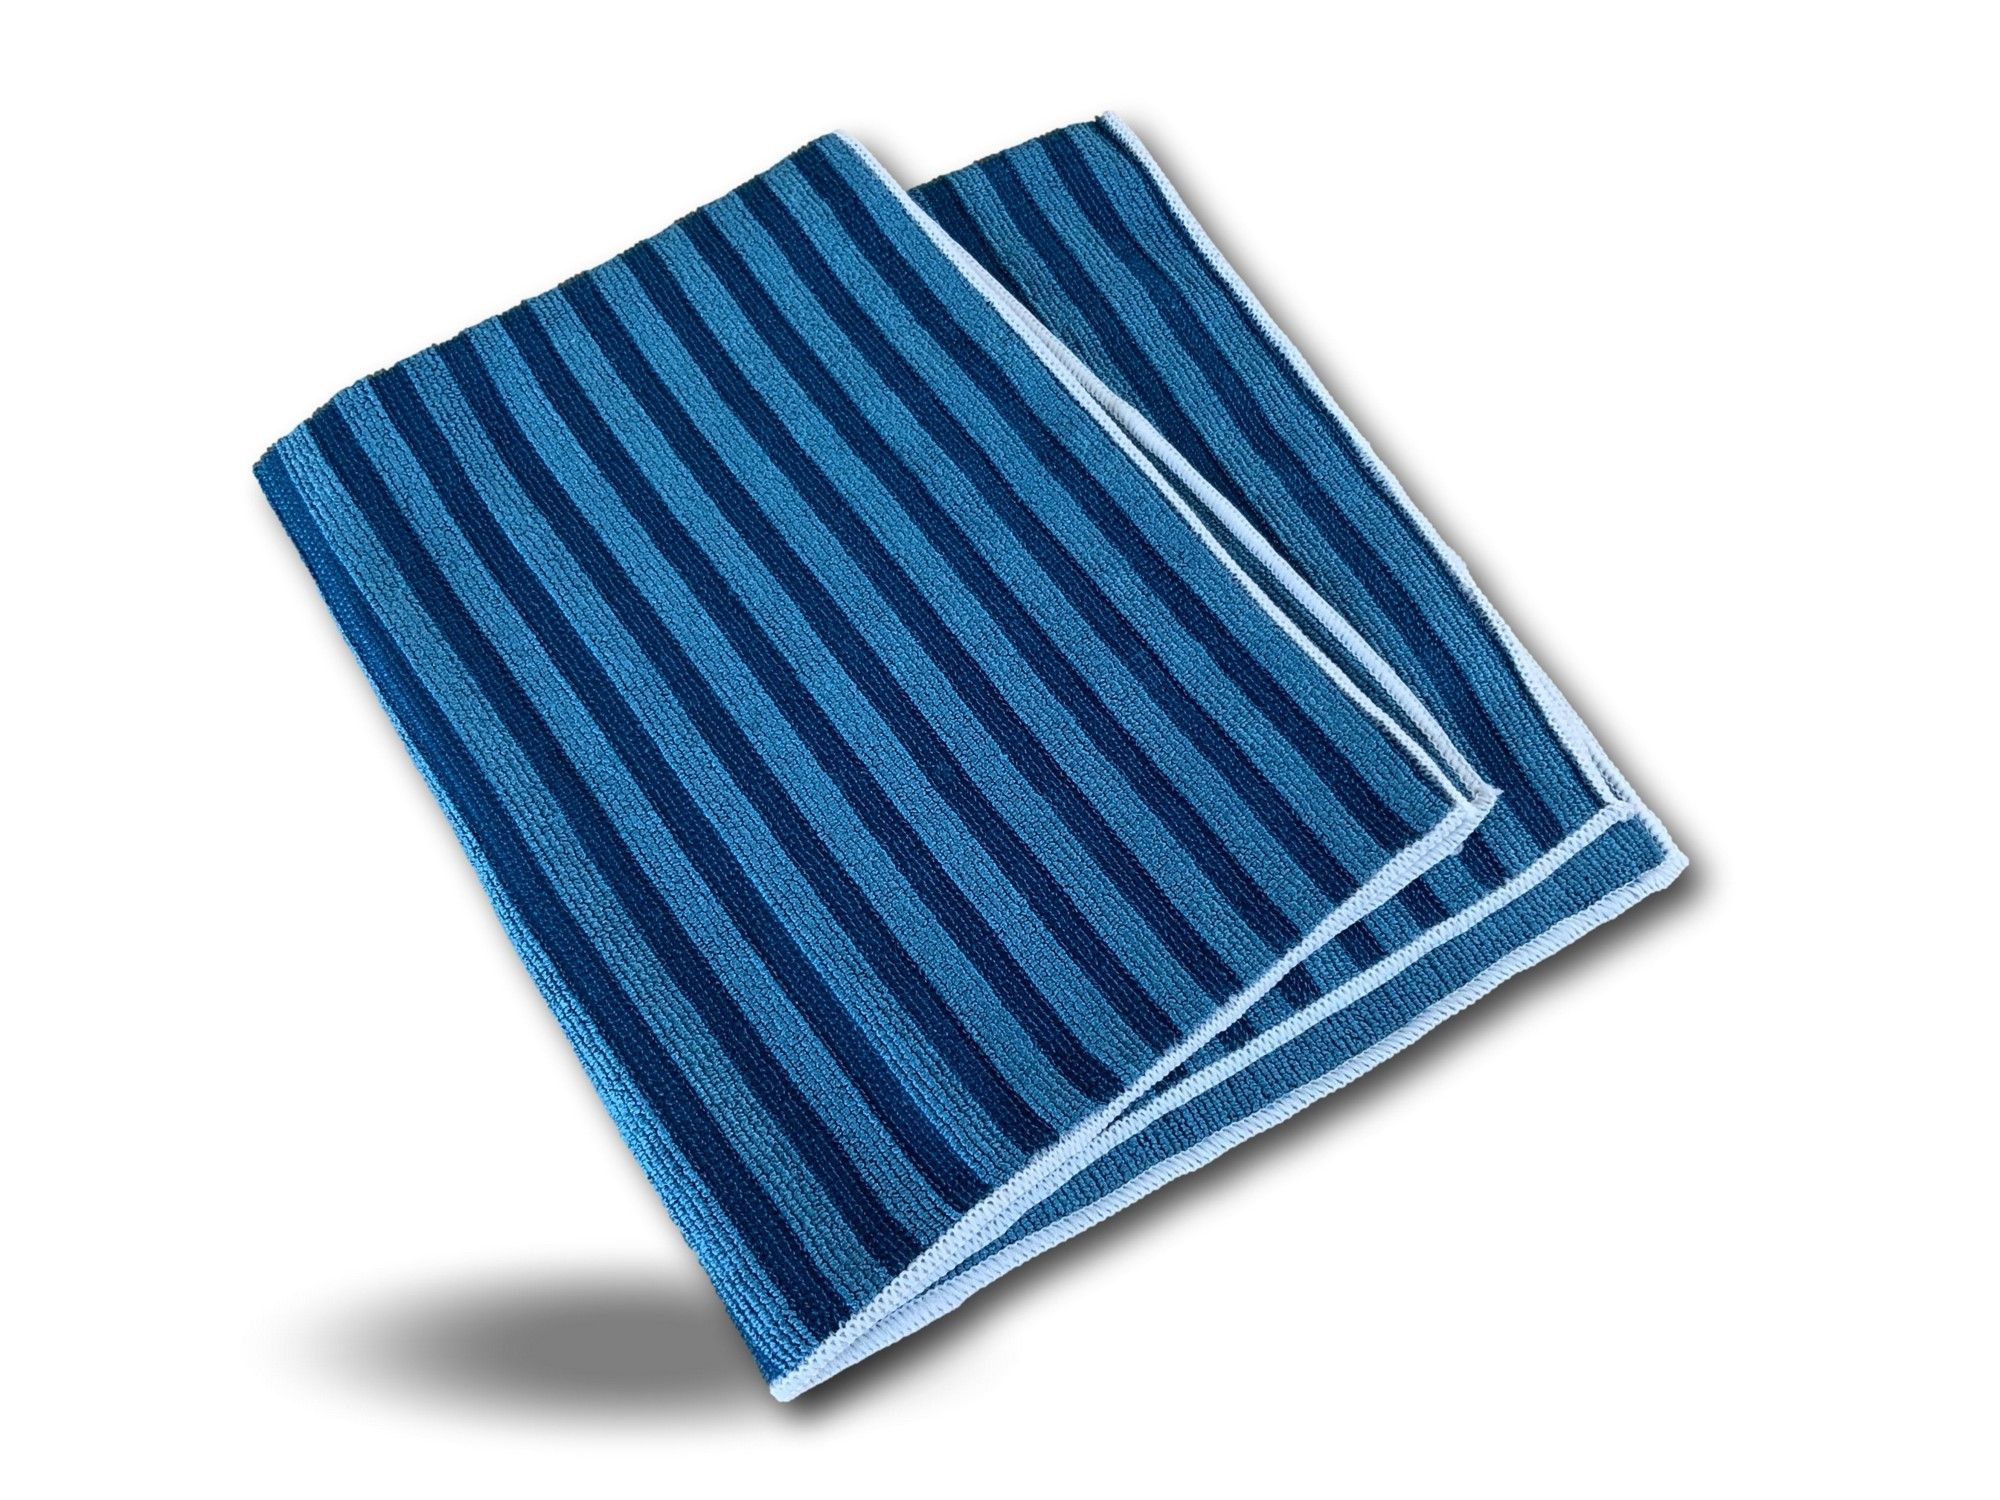 Torchon microfibre bleu 50 x 60 cm - Lot de 5 x 2 U.